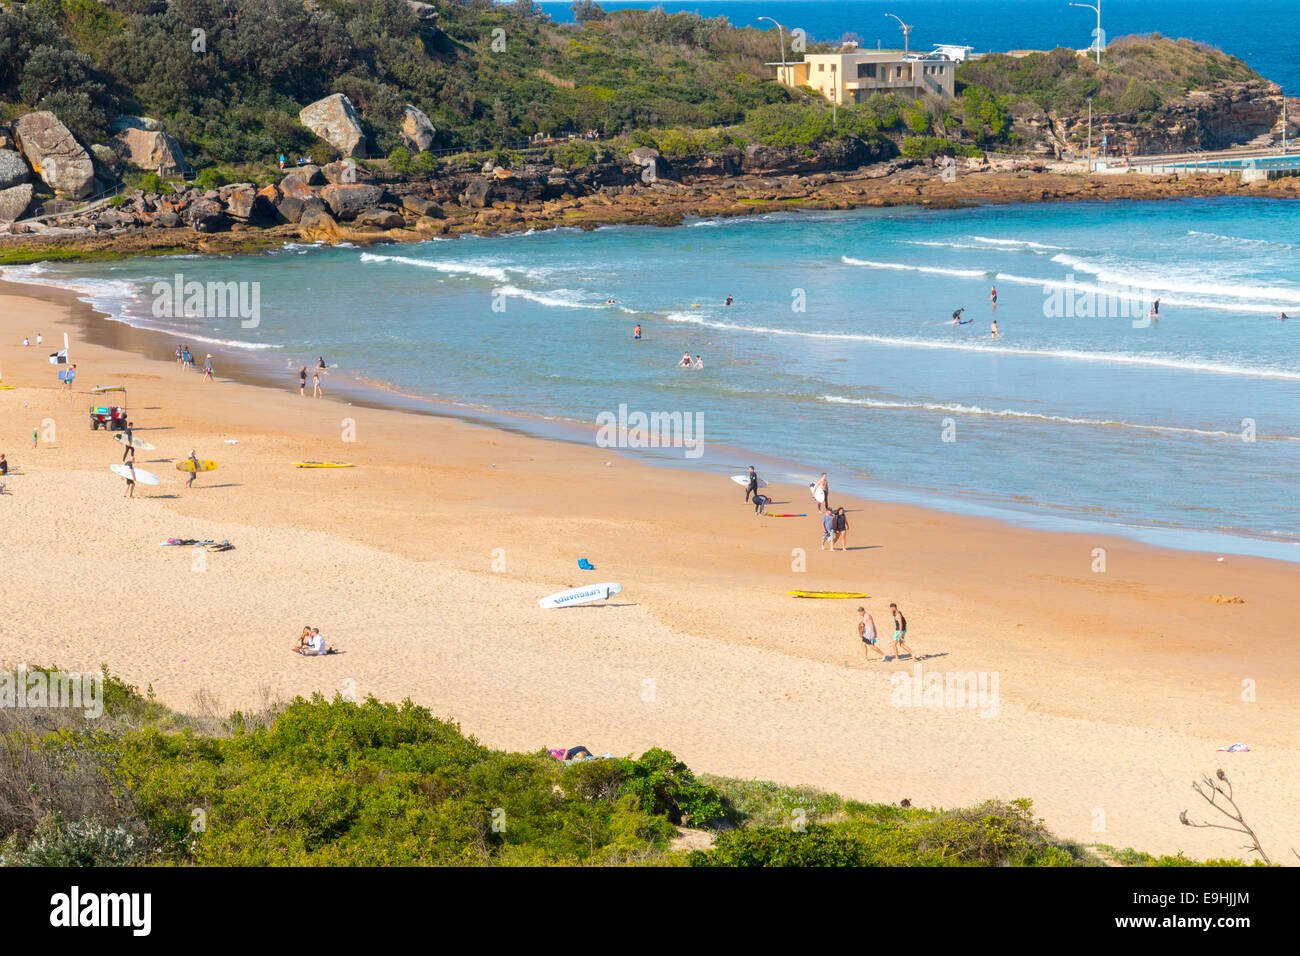 Plage d'eau douce, l'une des plages du nord de Sydney, Australie Banque D'Images